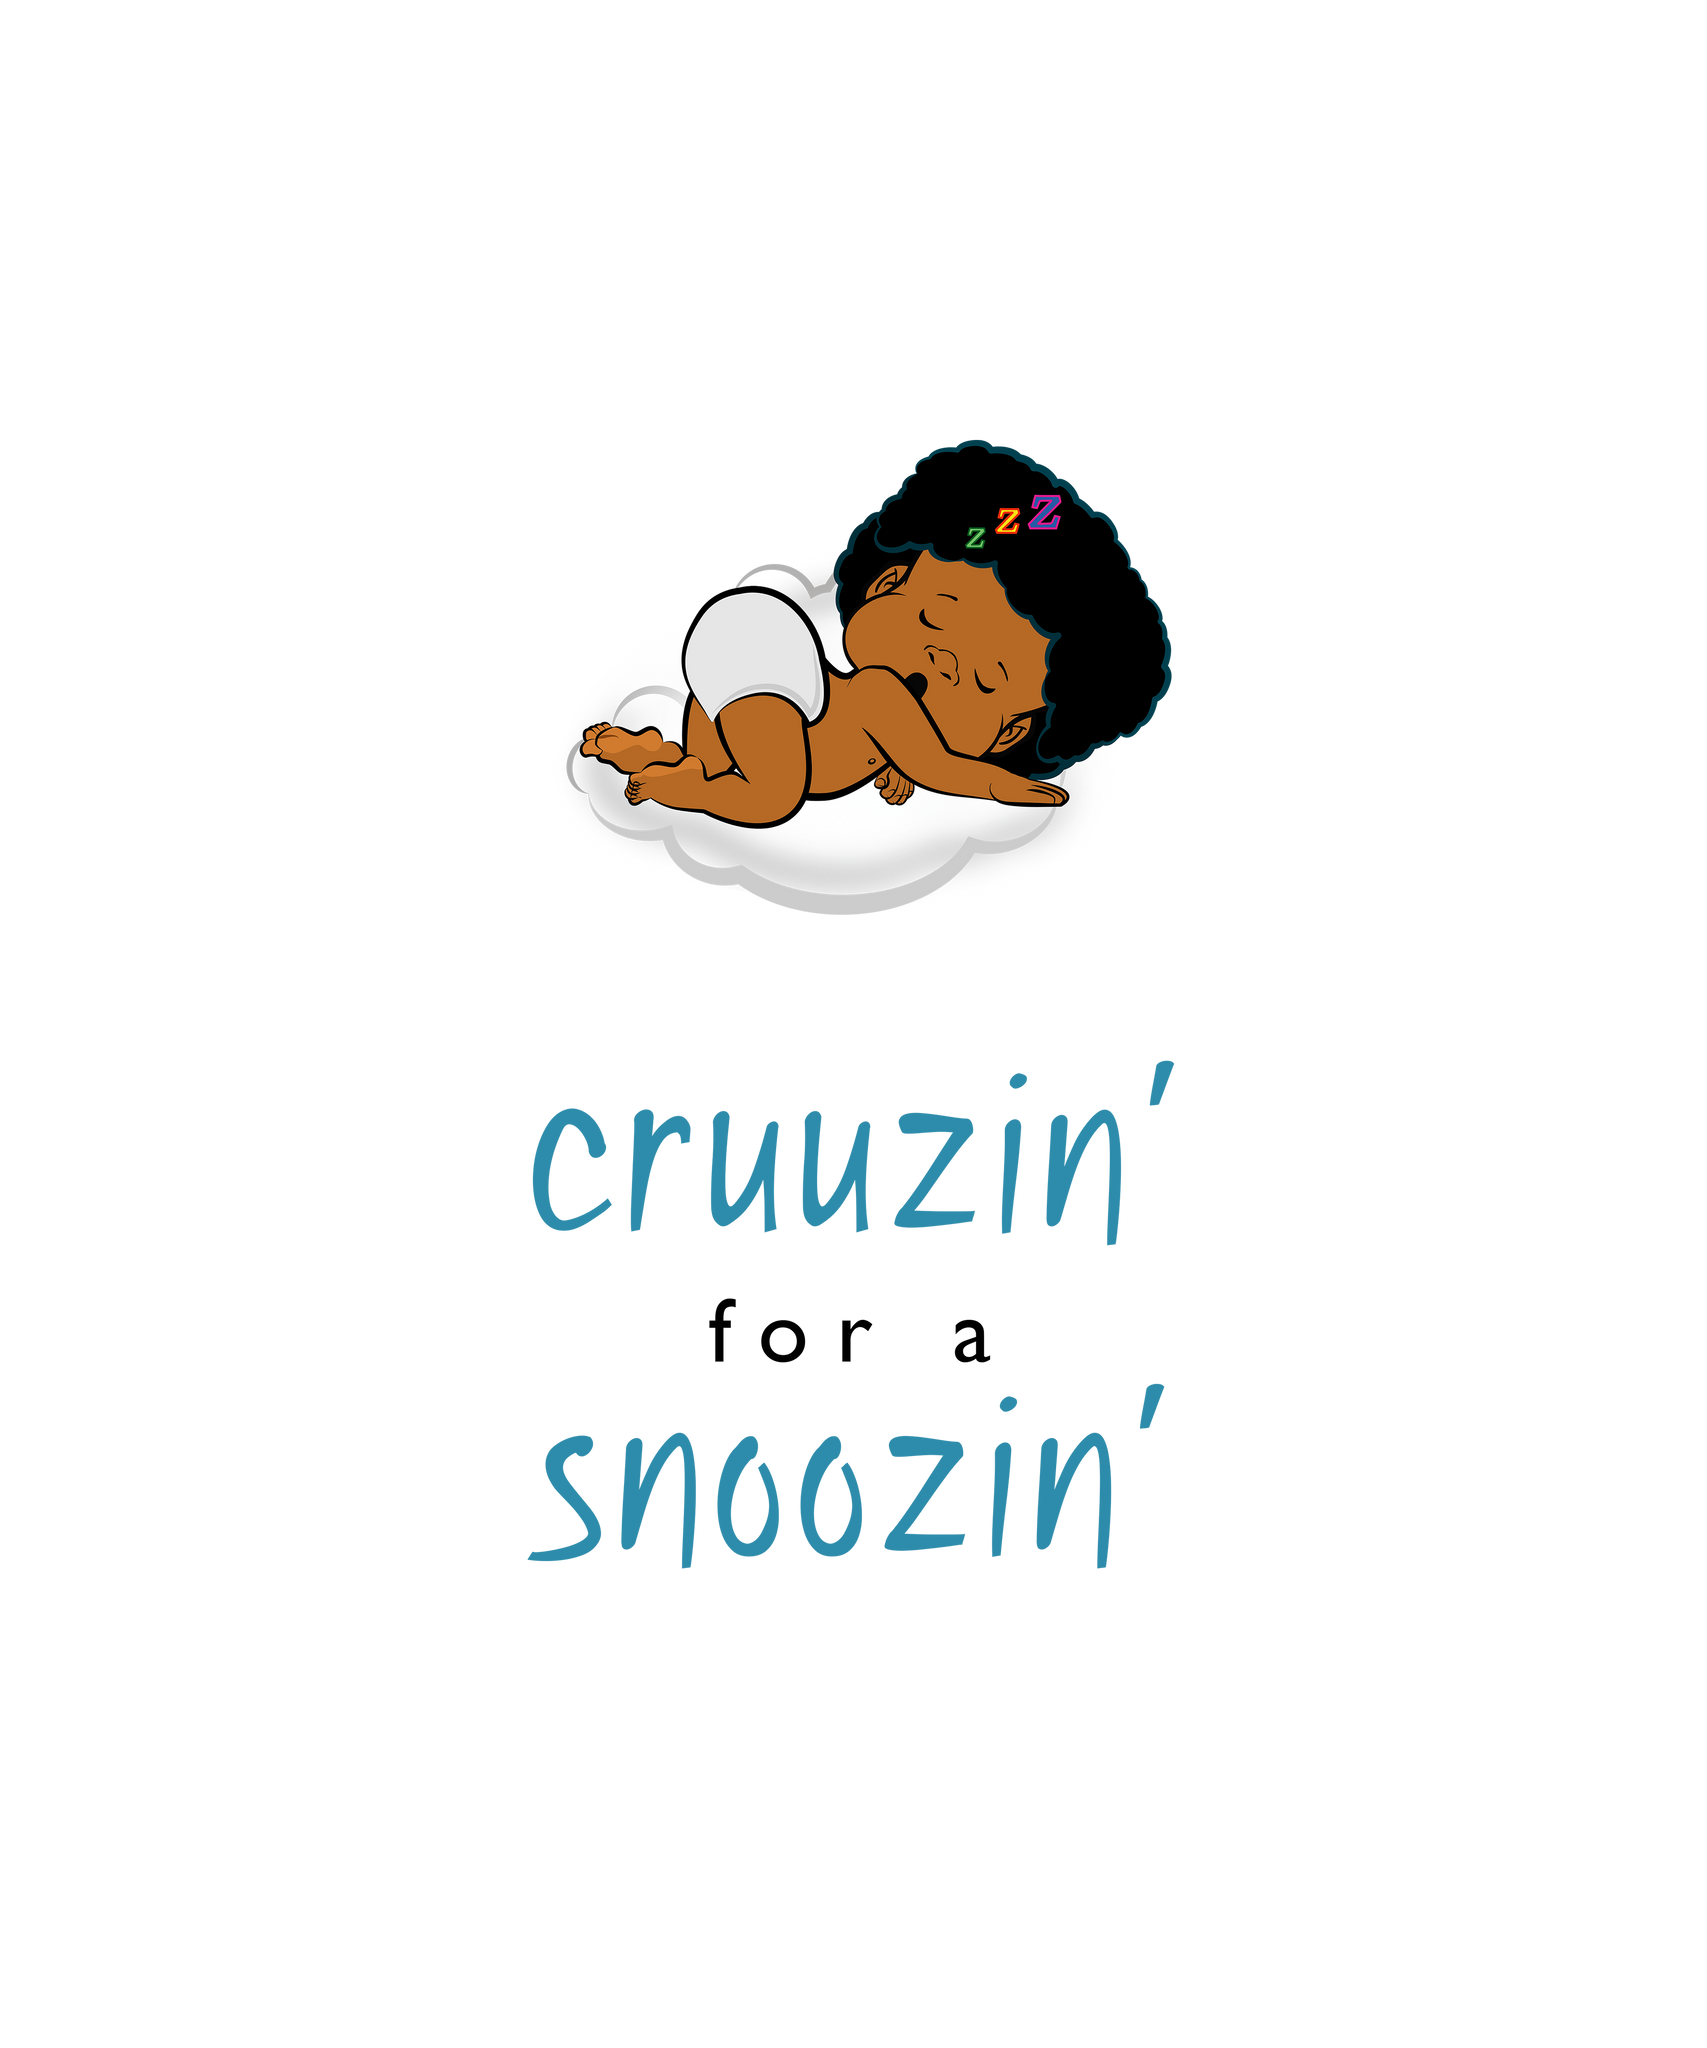 PBCZ0693_cruuzin' for a snoozin'_boy_4